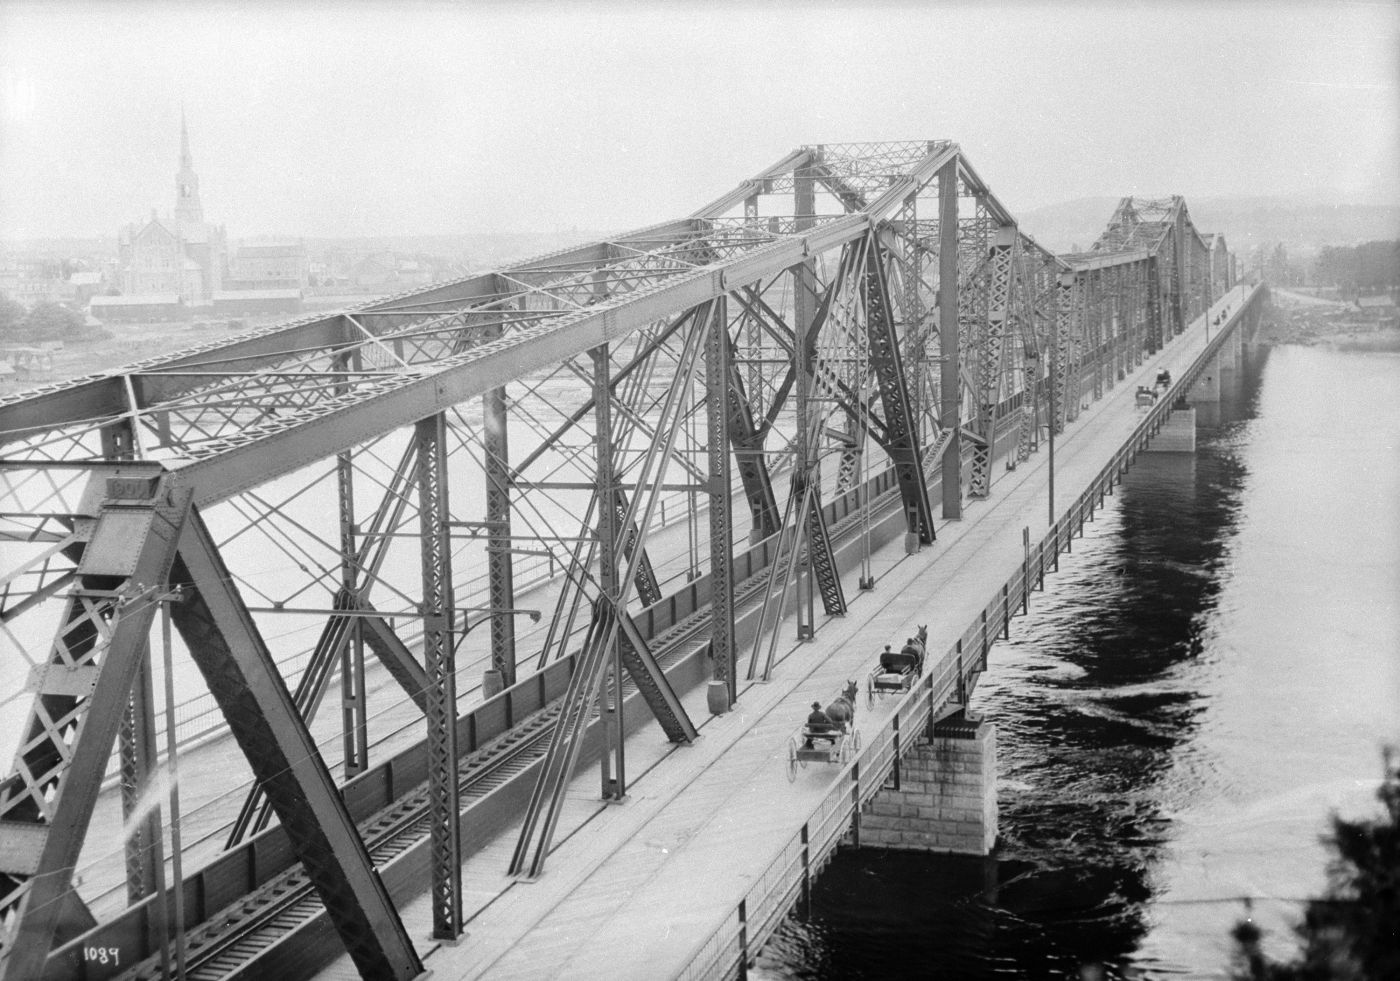 Photographie en noir et blanc d’un pont à treillis en acier surplombant une rivière. D’un côté du pont, des bogheis tirés par des chevaux se dirigent vers la rive où se trouve une église.